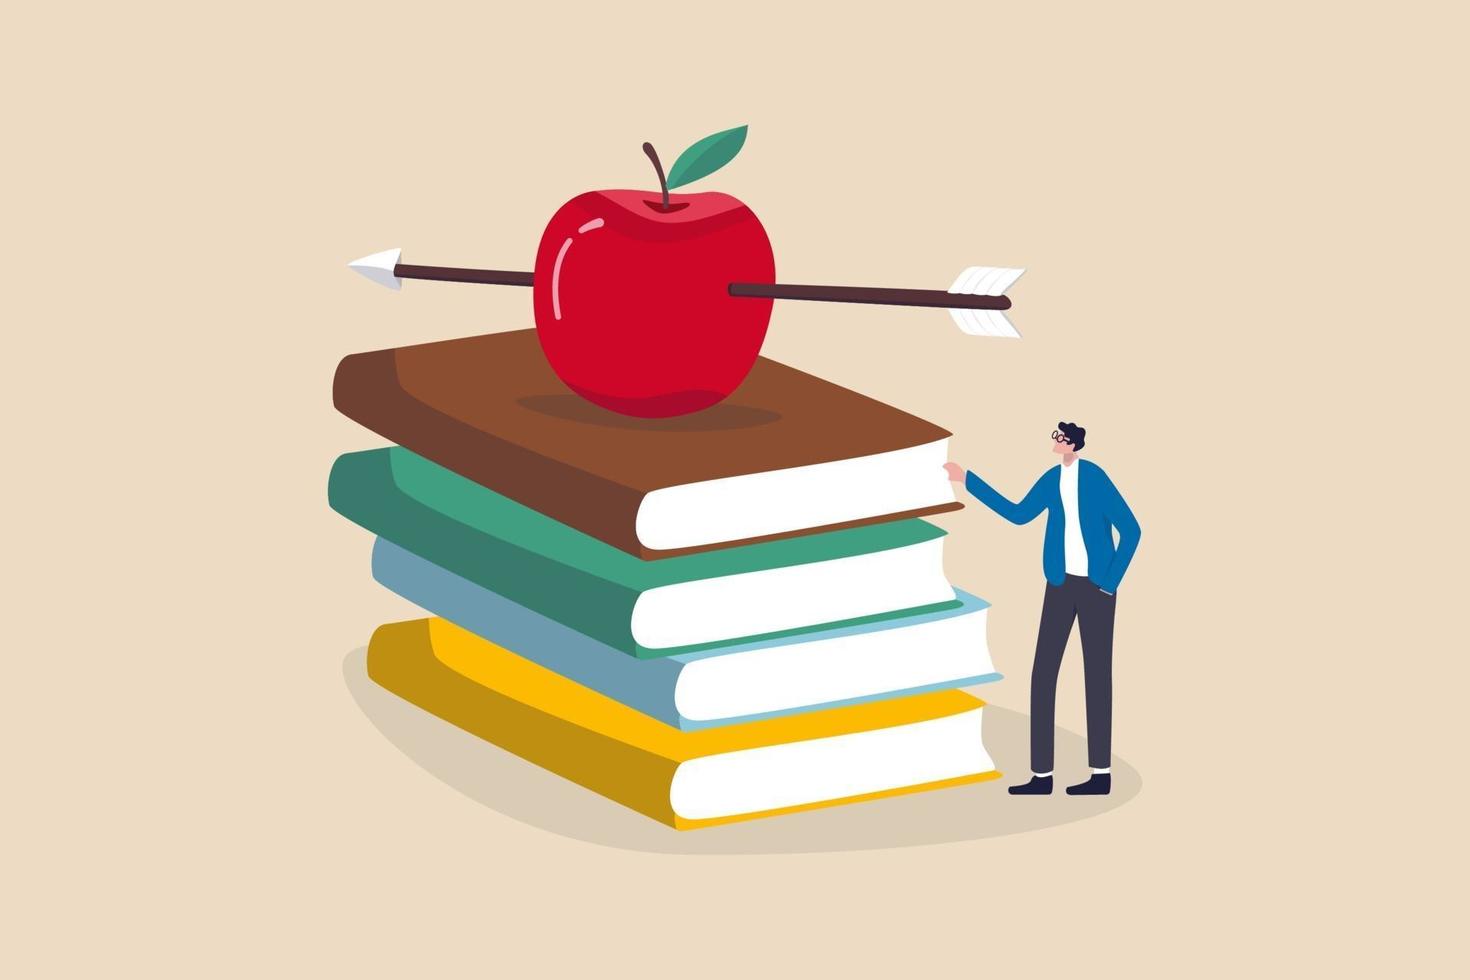 kennis, onderwijs, academisch en beursconcept, slimme leraar of professor die wachten om les te geven die zich met boogschietpijl recht op rode appel op stapel handboeken bevindt. vector